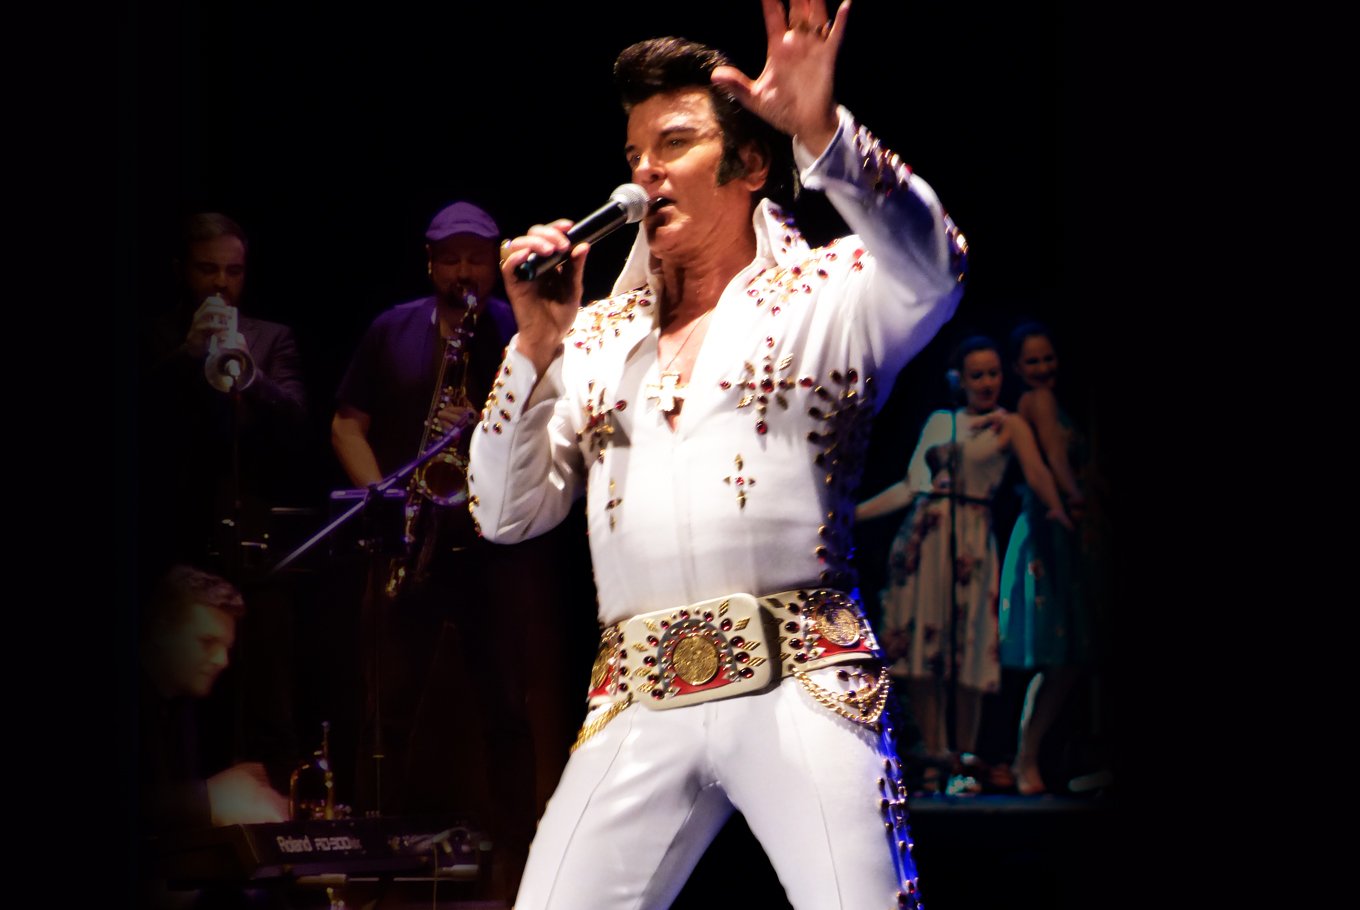 Elvis Vive en Paterna: Greg Miller rinde homenaje al Rey del Rock con un concierto tributo.